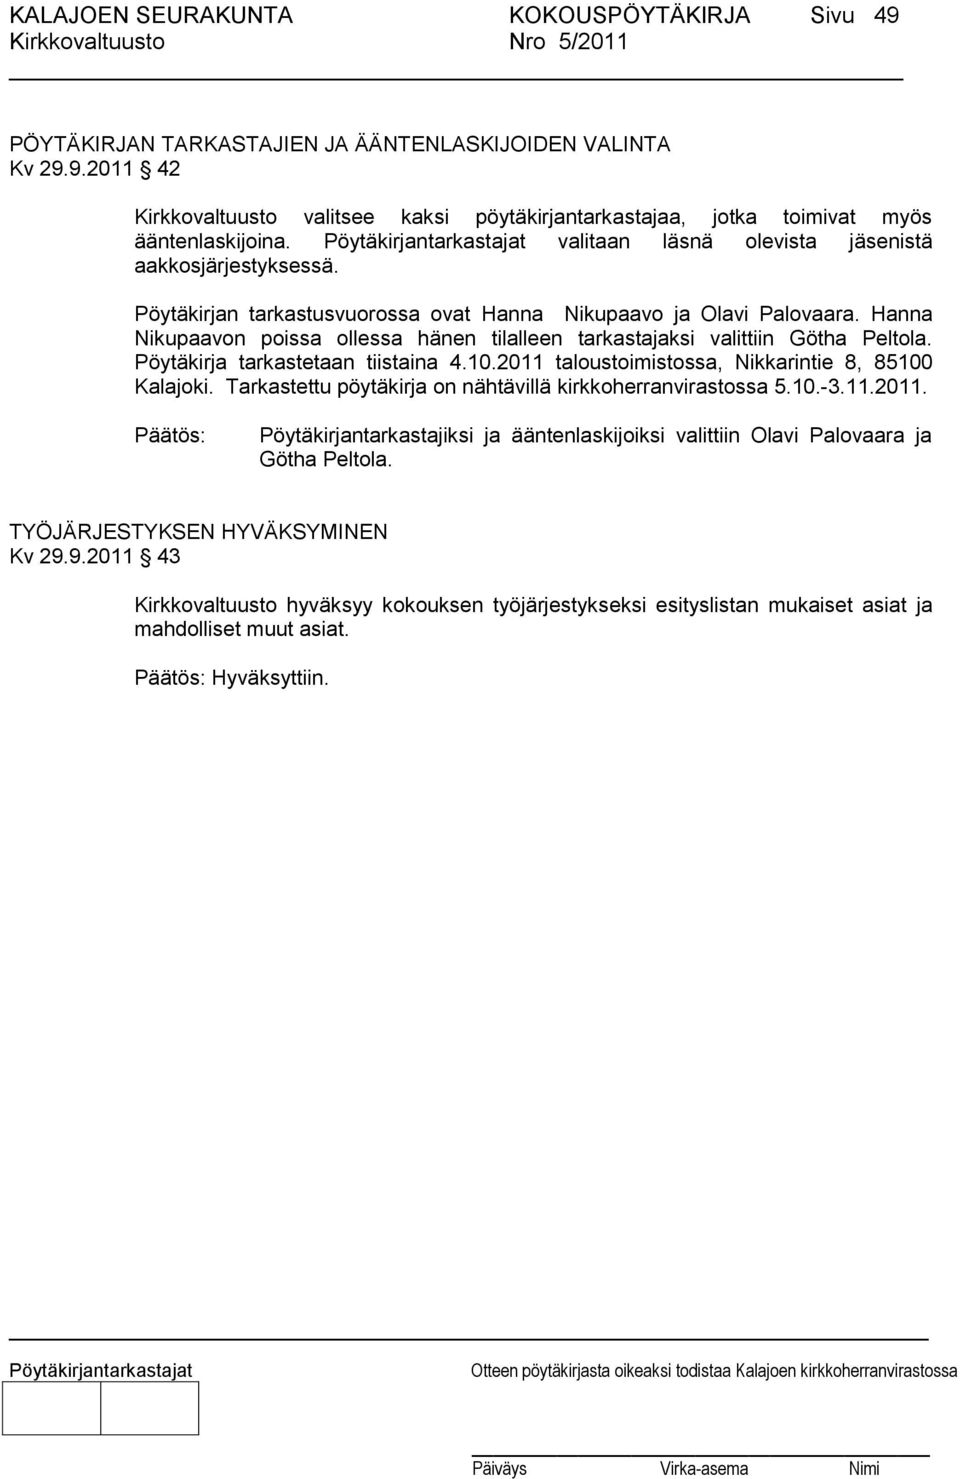 Hanna Nikupaavon poissa ollessa hänen tilalleen tarkastajaksi valittiin Götha Peltola. Pöytäkirja tarkastetaan tiistaina 4.10.2011 taloustoimistossa, Nikkarintie 8, 85100 Kalajoki.